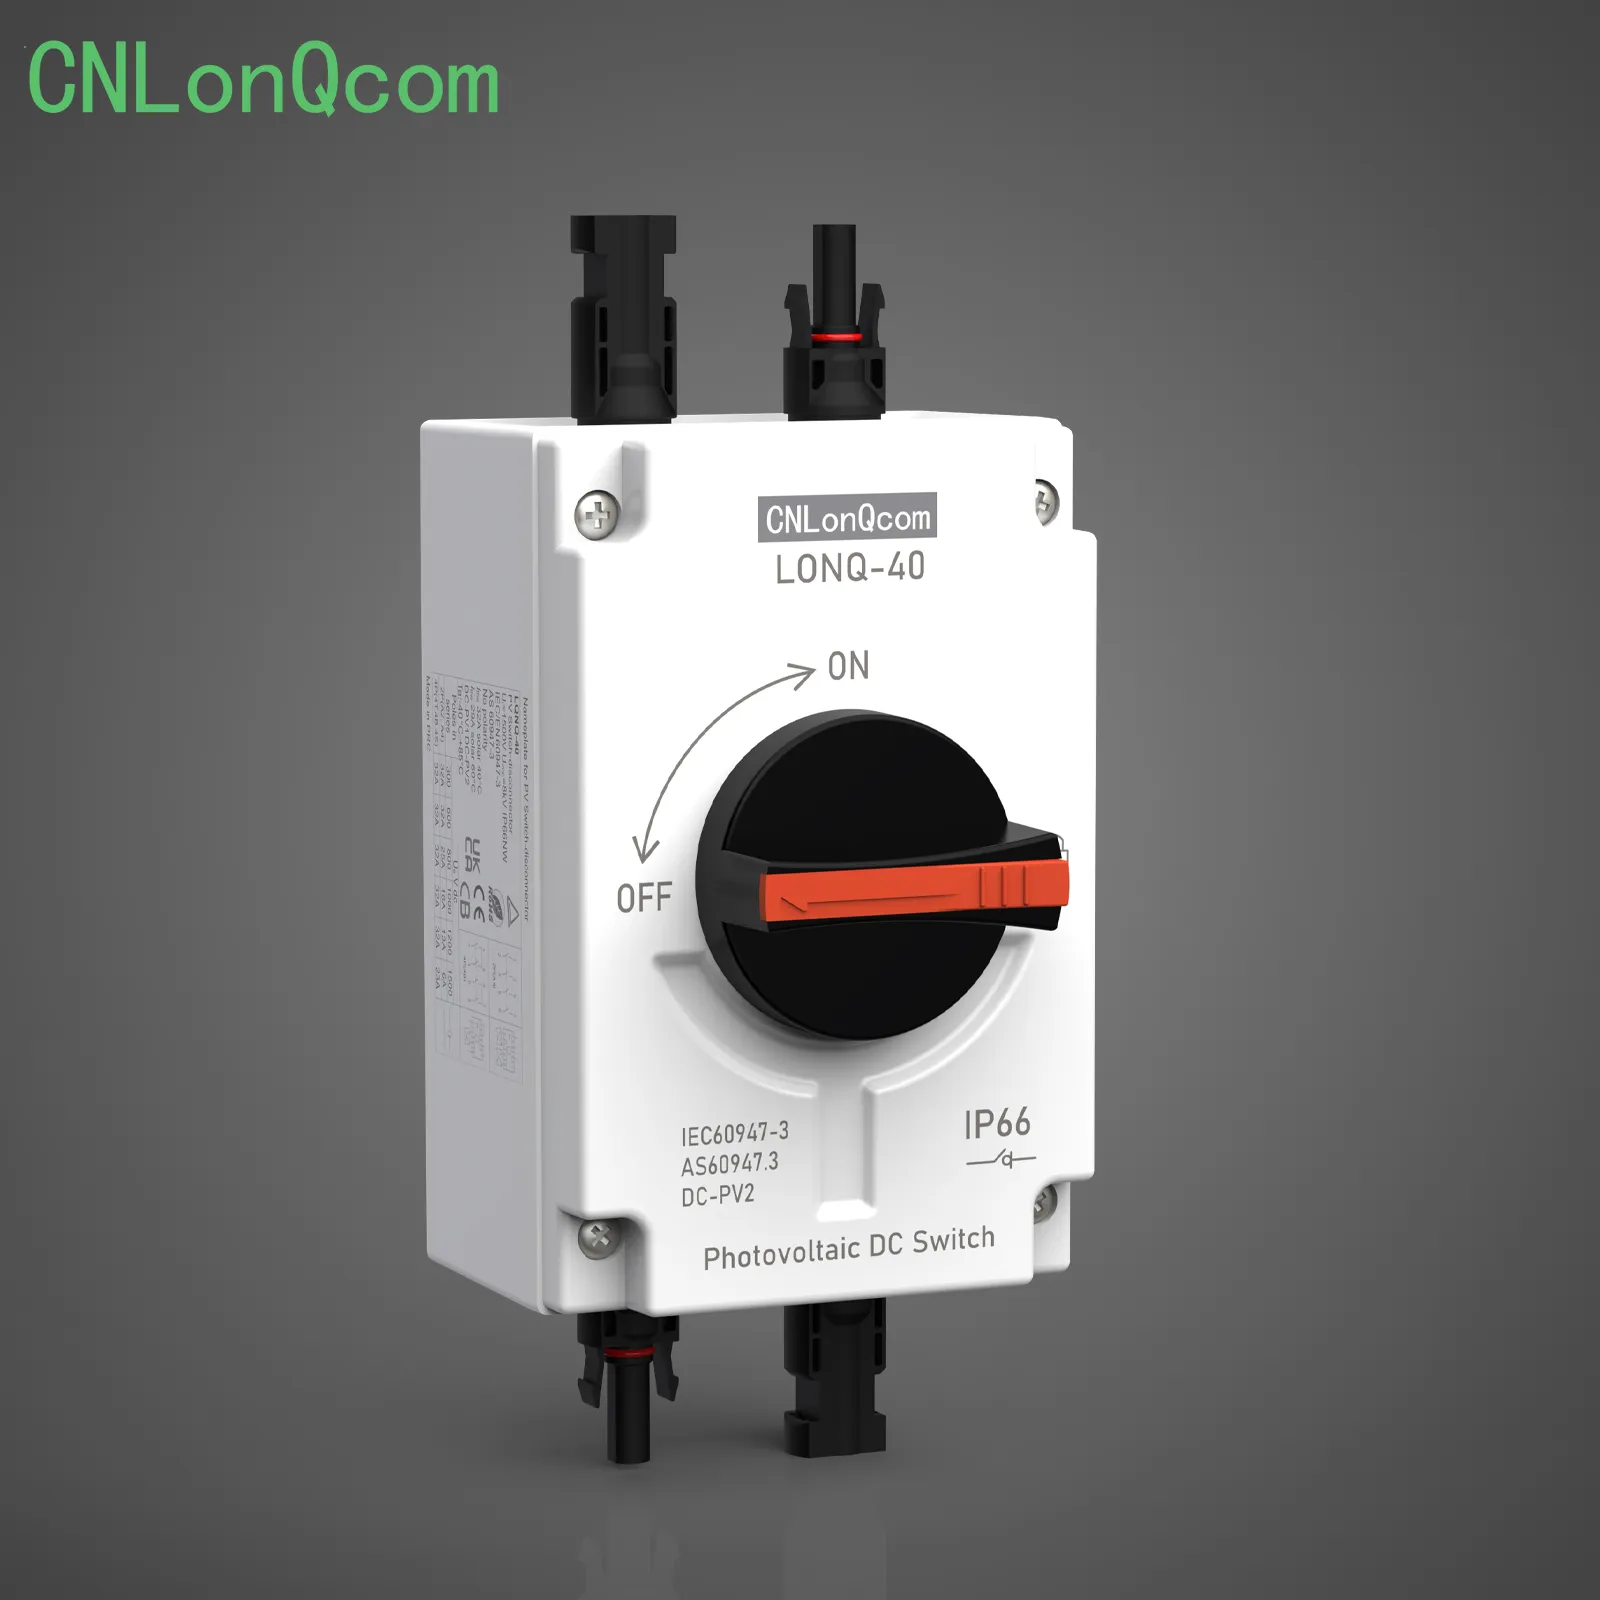 CNLonQcom toont isolatieschakelaar in nieuwe video